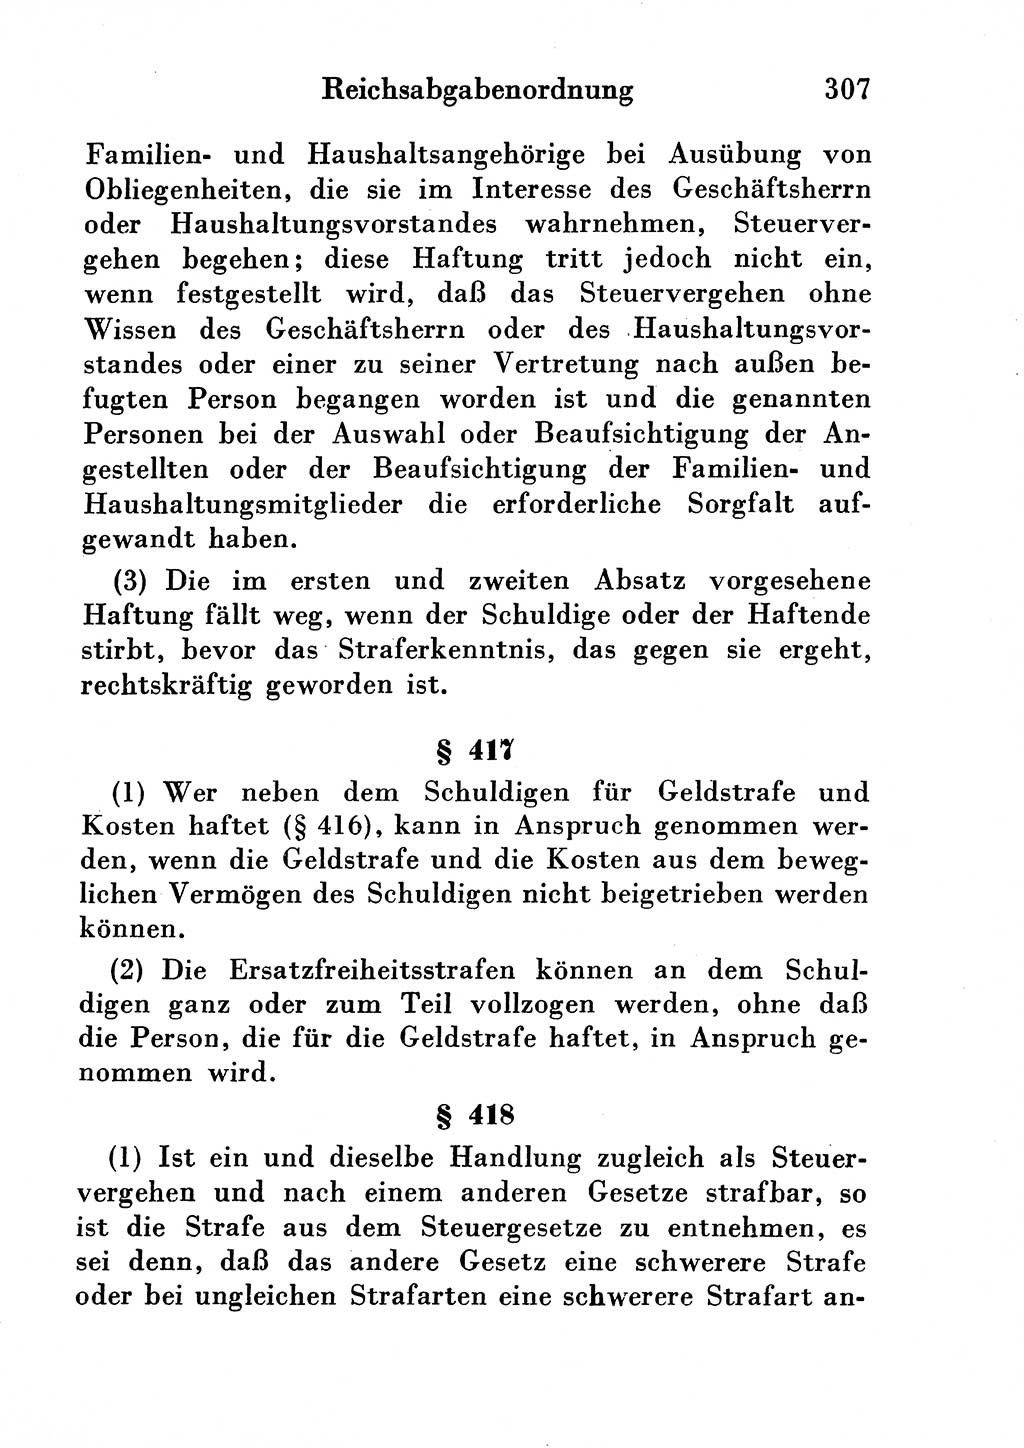 Strafgesetzbuch (StGB) und andere Strafgesetze [Deutsche Demokratische Republik (DDR)] 1954, Seite 307 (StGB Strafges. DDR 1954, S. 307)